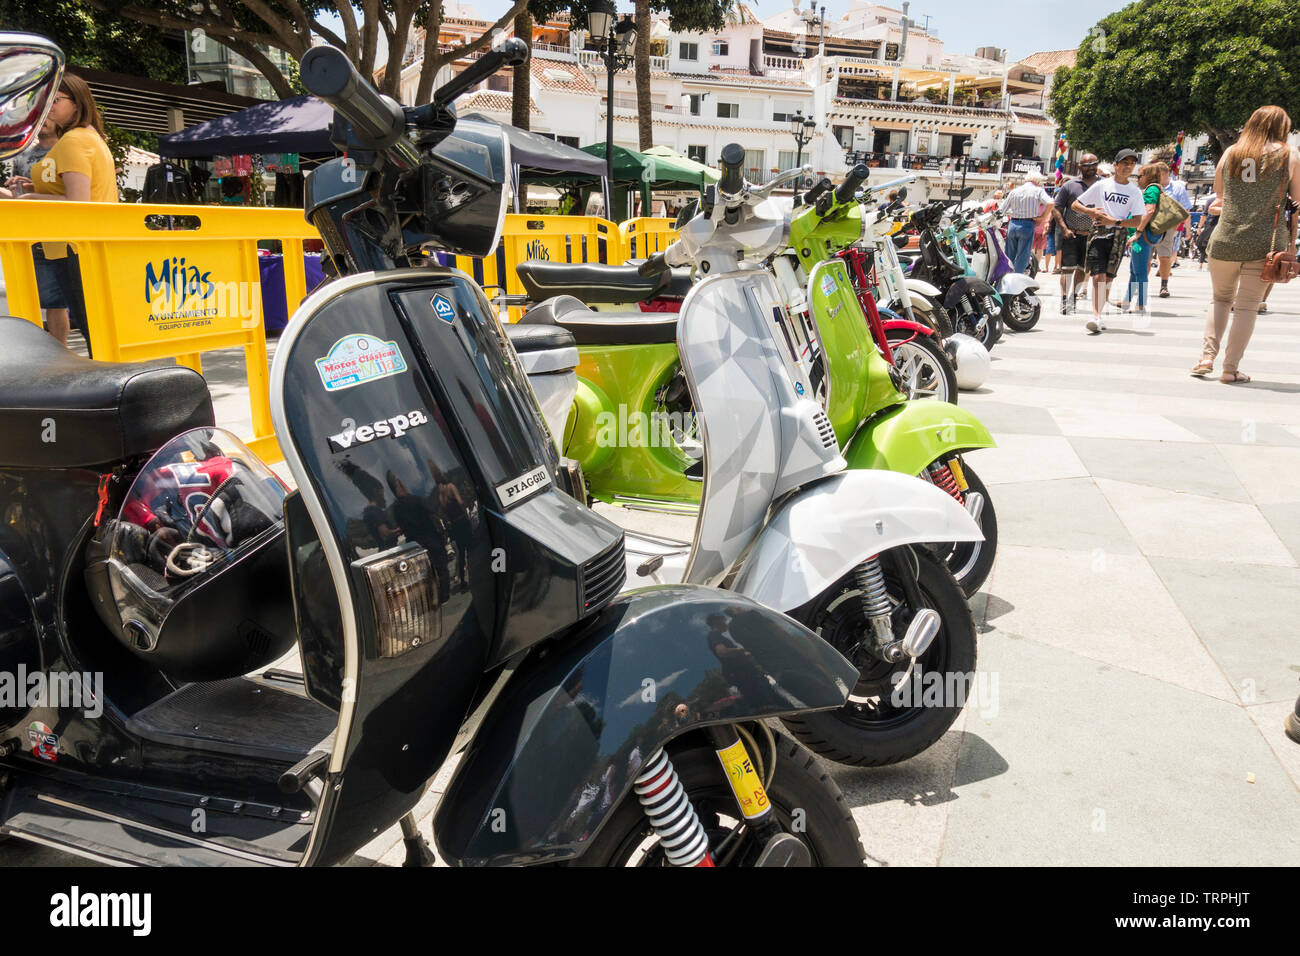 Scooters Vespa classique sur l'affichage à une réunion annuelle de moto classique à Mijas, Andalousie, espagne. Banque D'Images